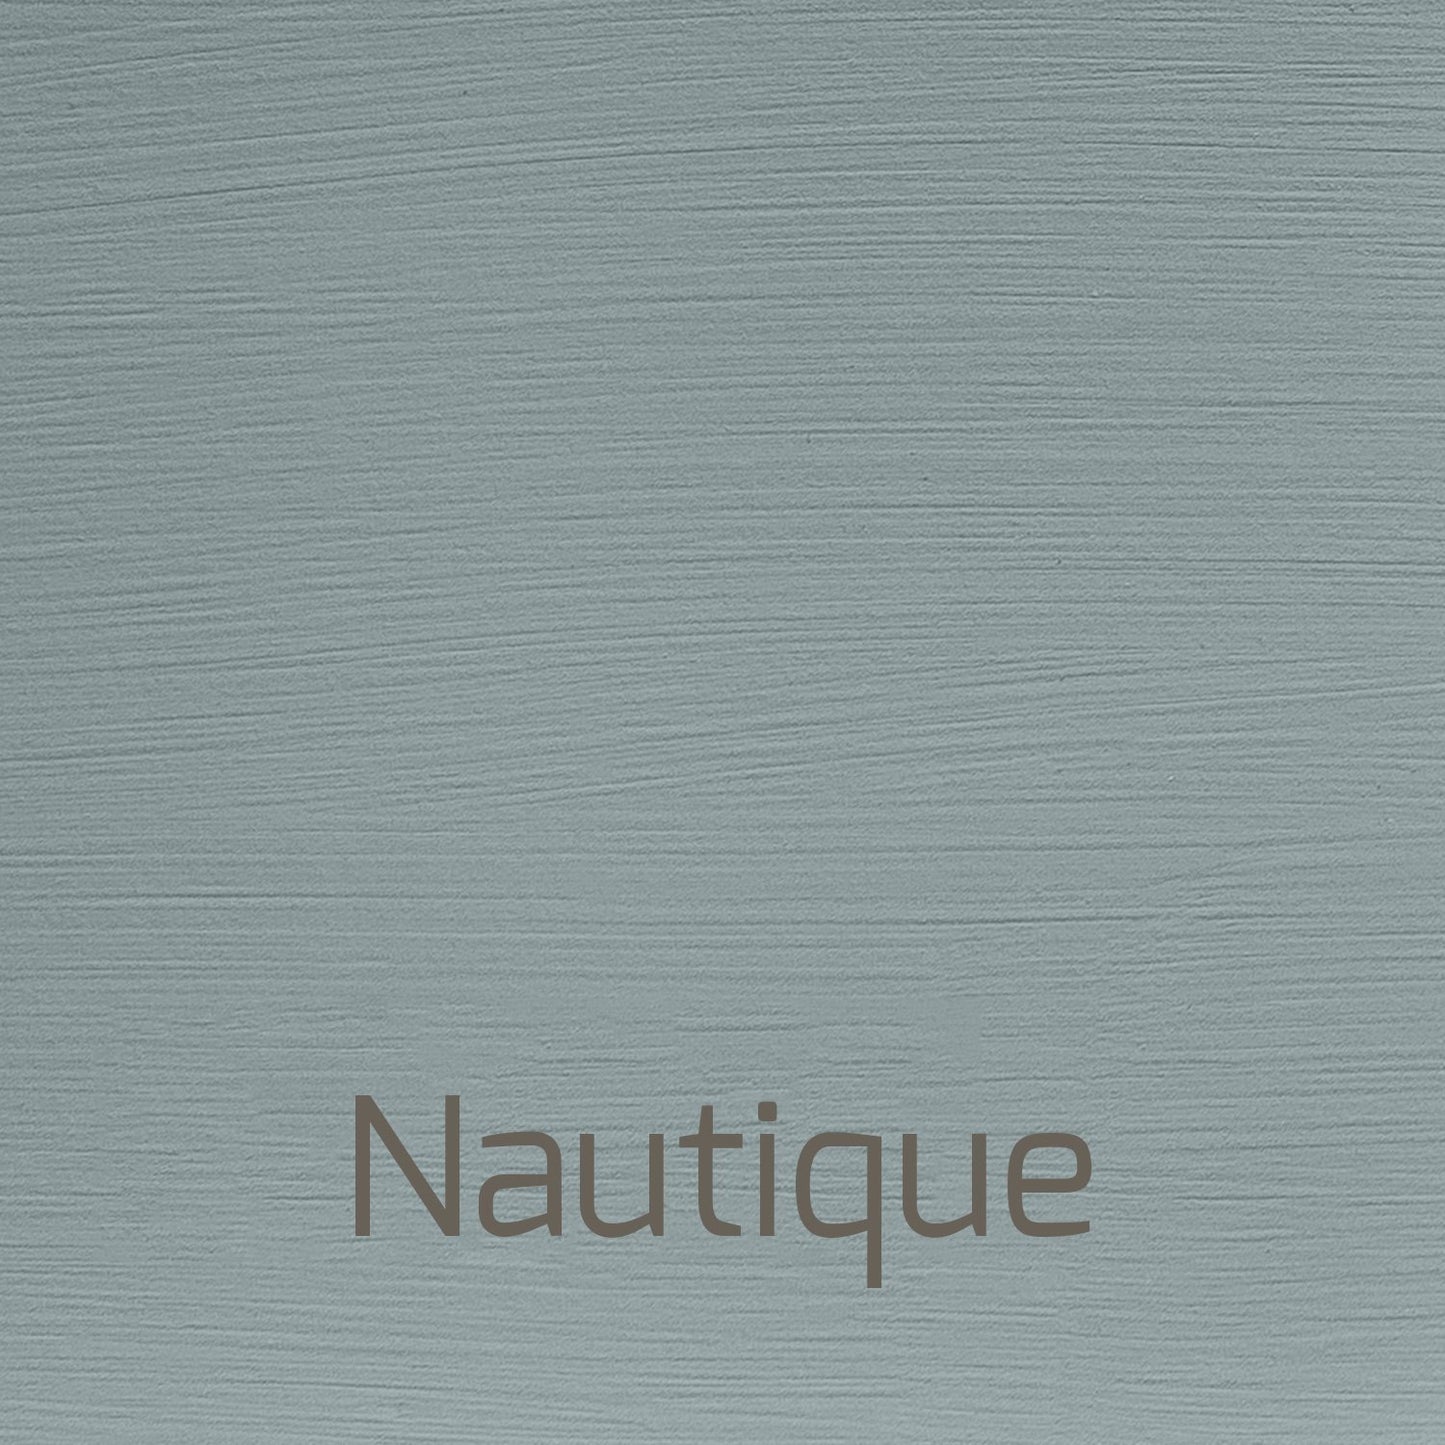 Nautique - Vintage-Vintage-Autentico Paint Online